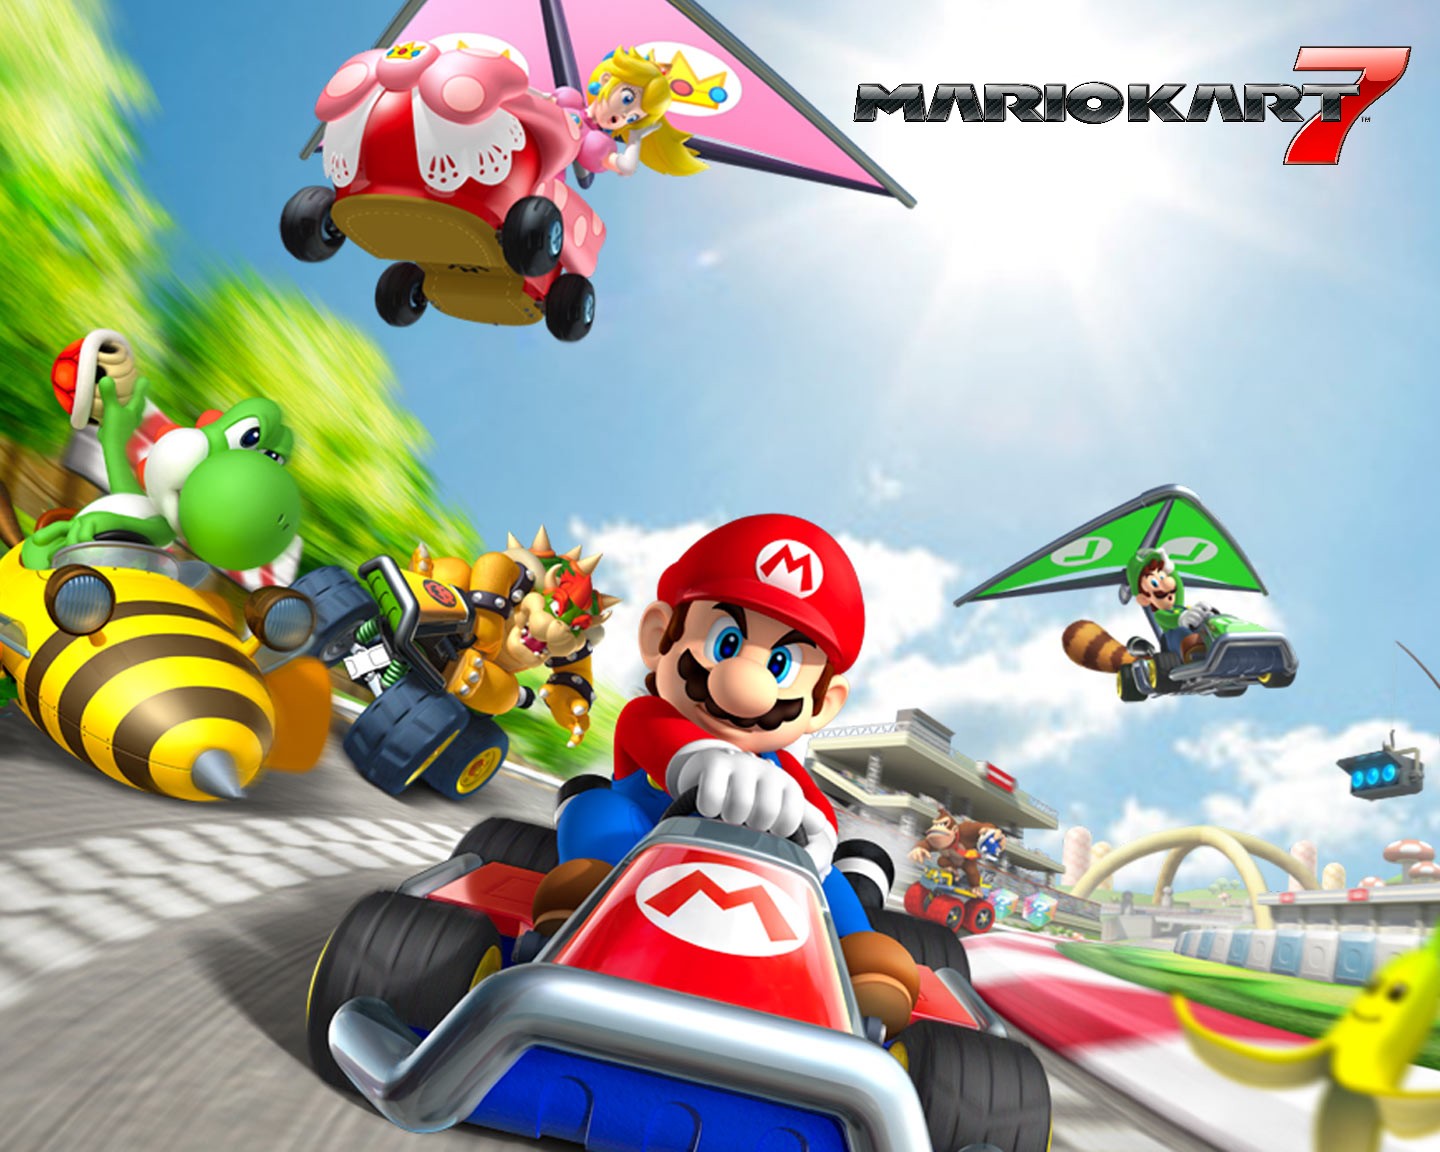 Mario Kart Pictures toon Pinterest